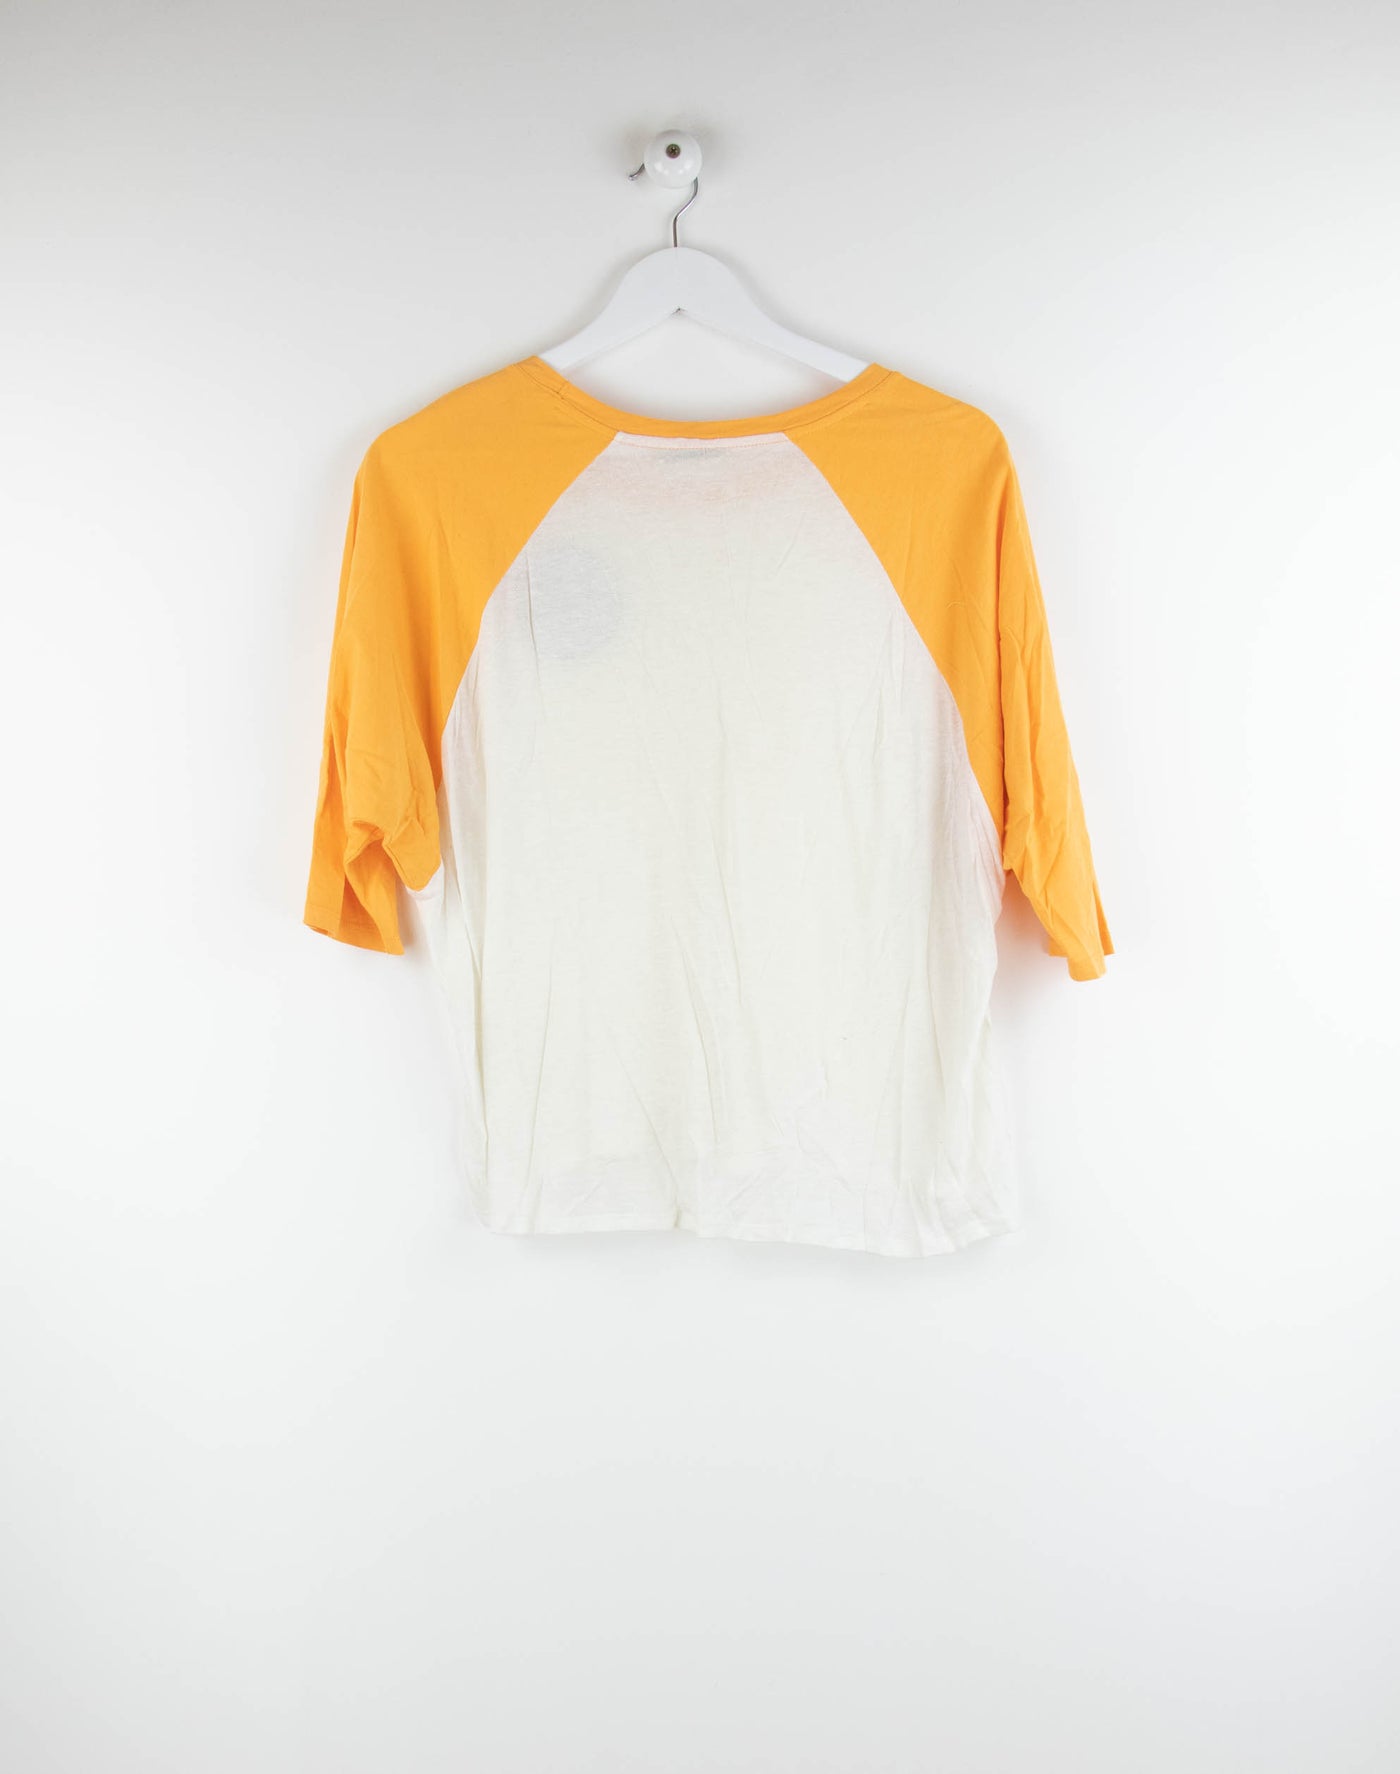 Camiseta blanca con mangas naranjas